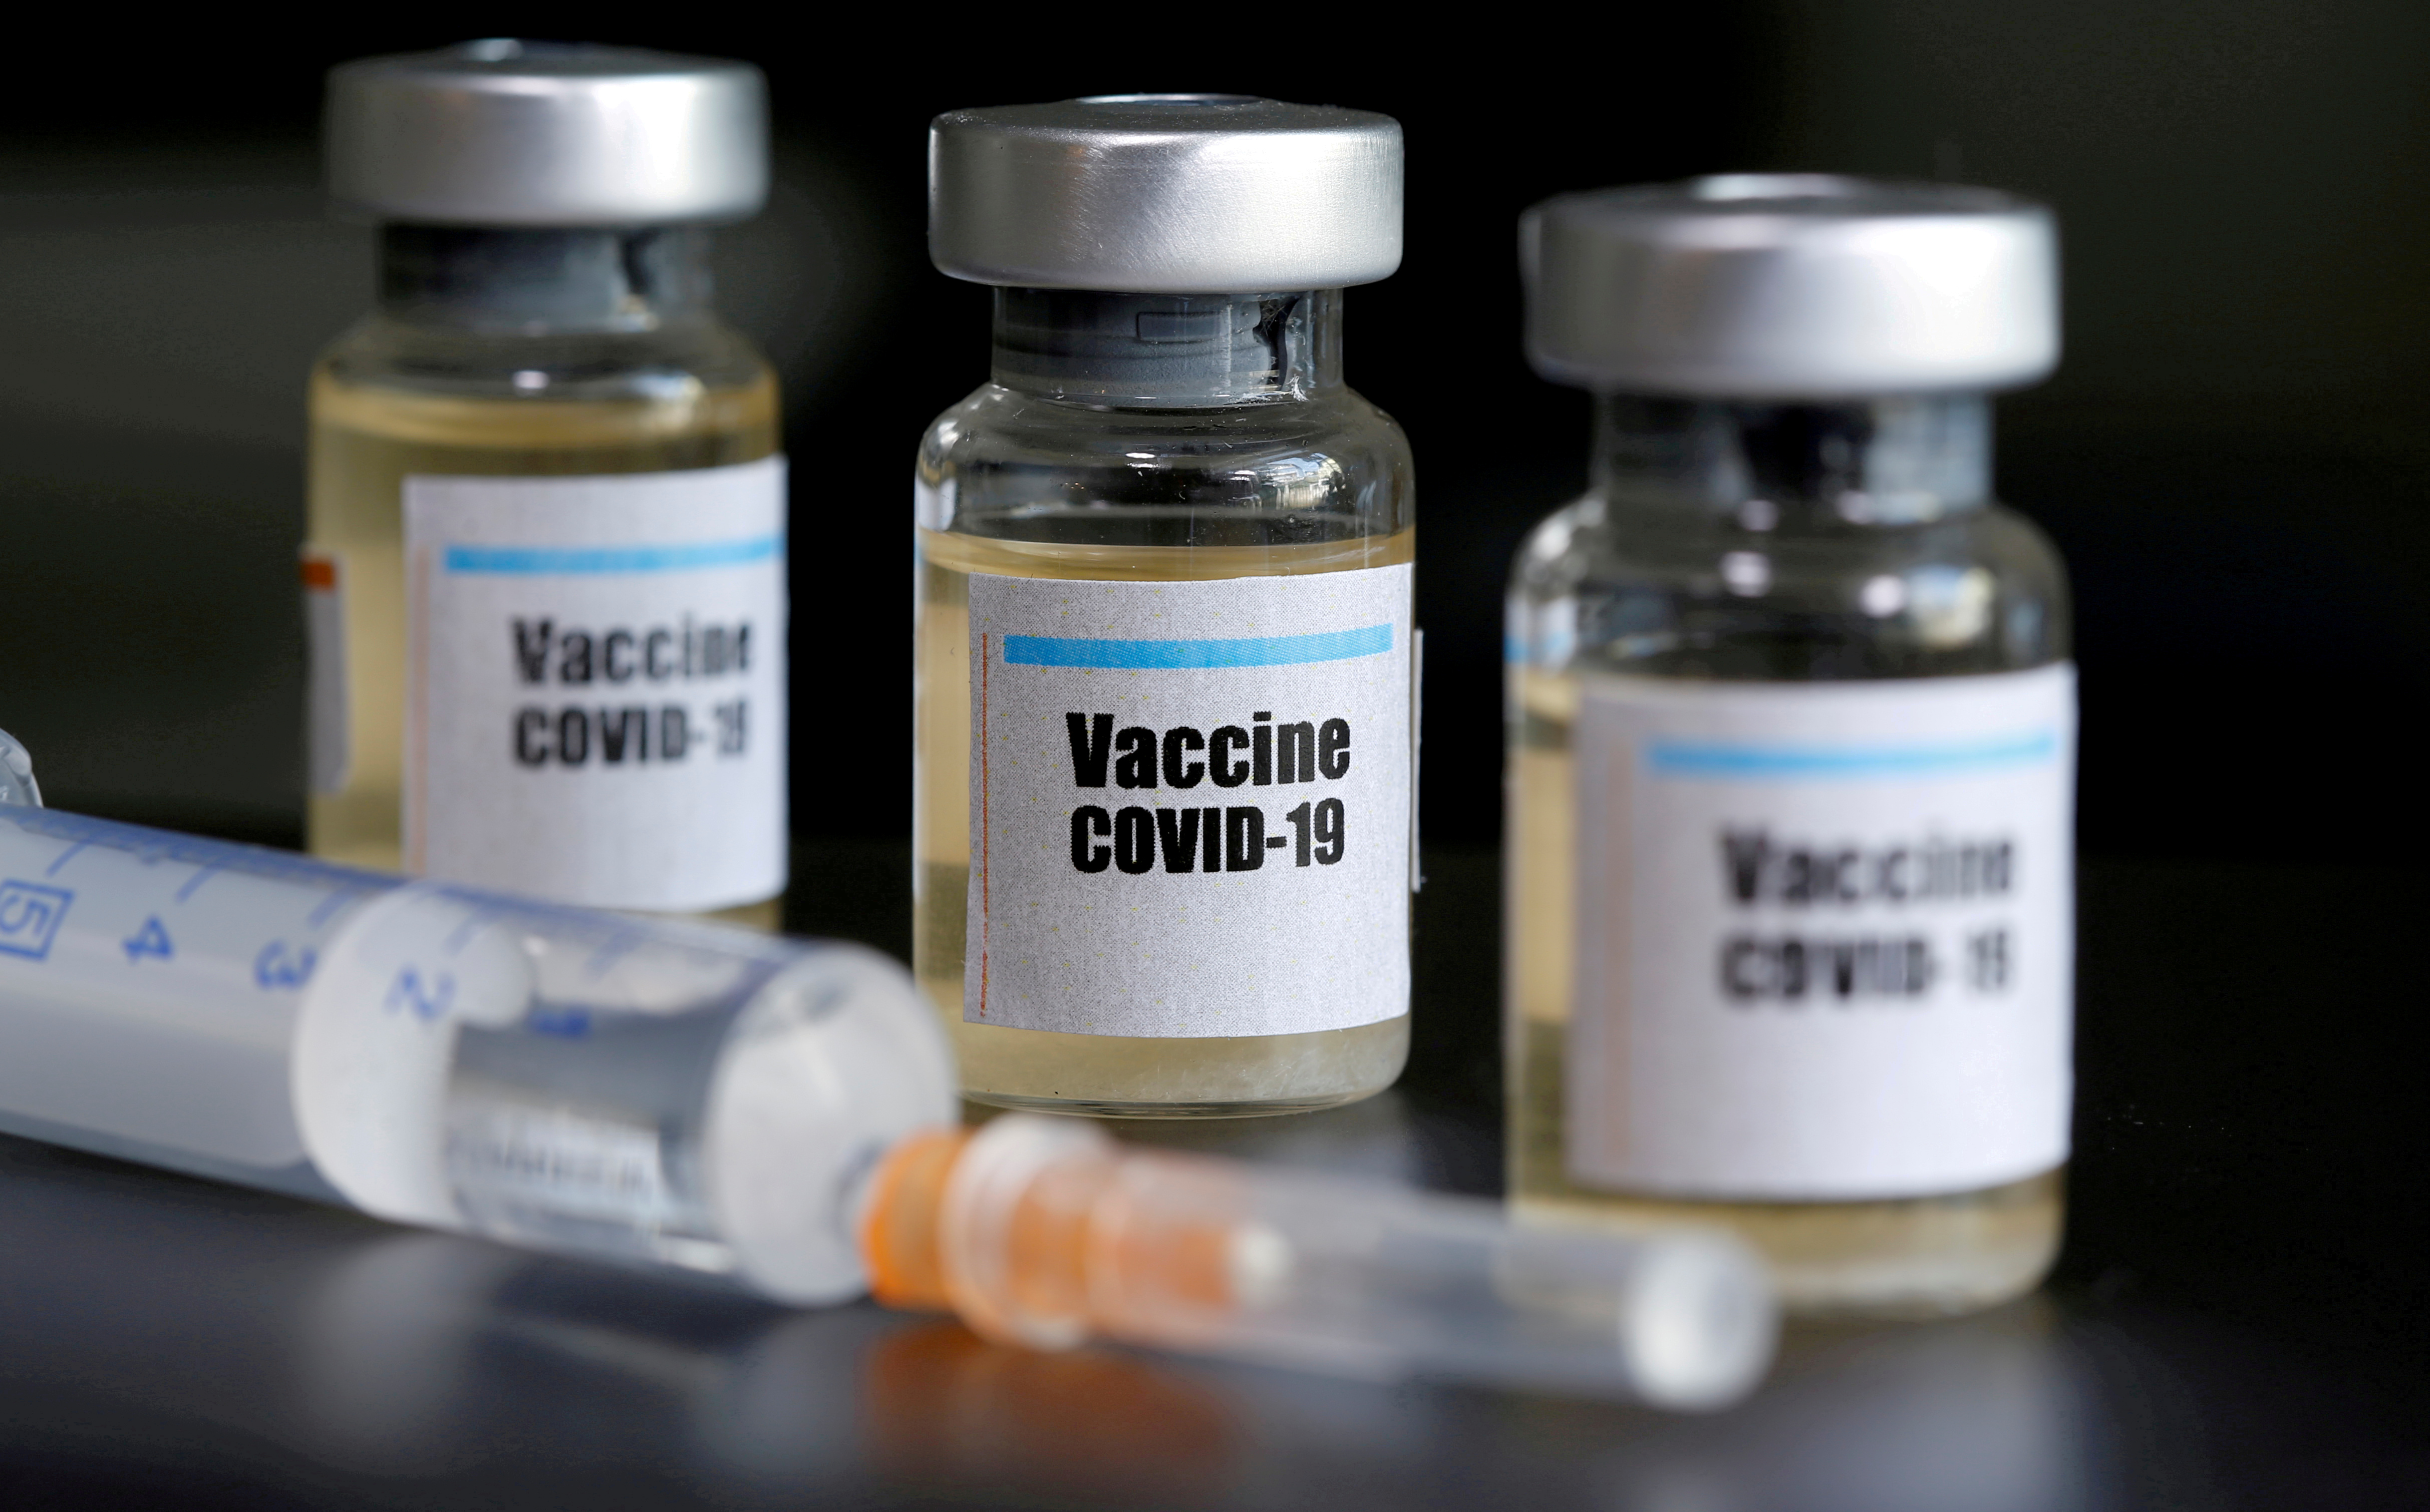 Vacuna de AstraZeneca contra Covid-19 arroja respuesta inmune en primera fase de ensayos